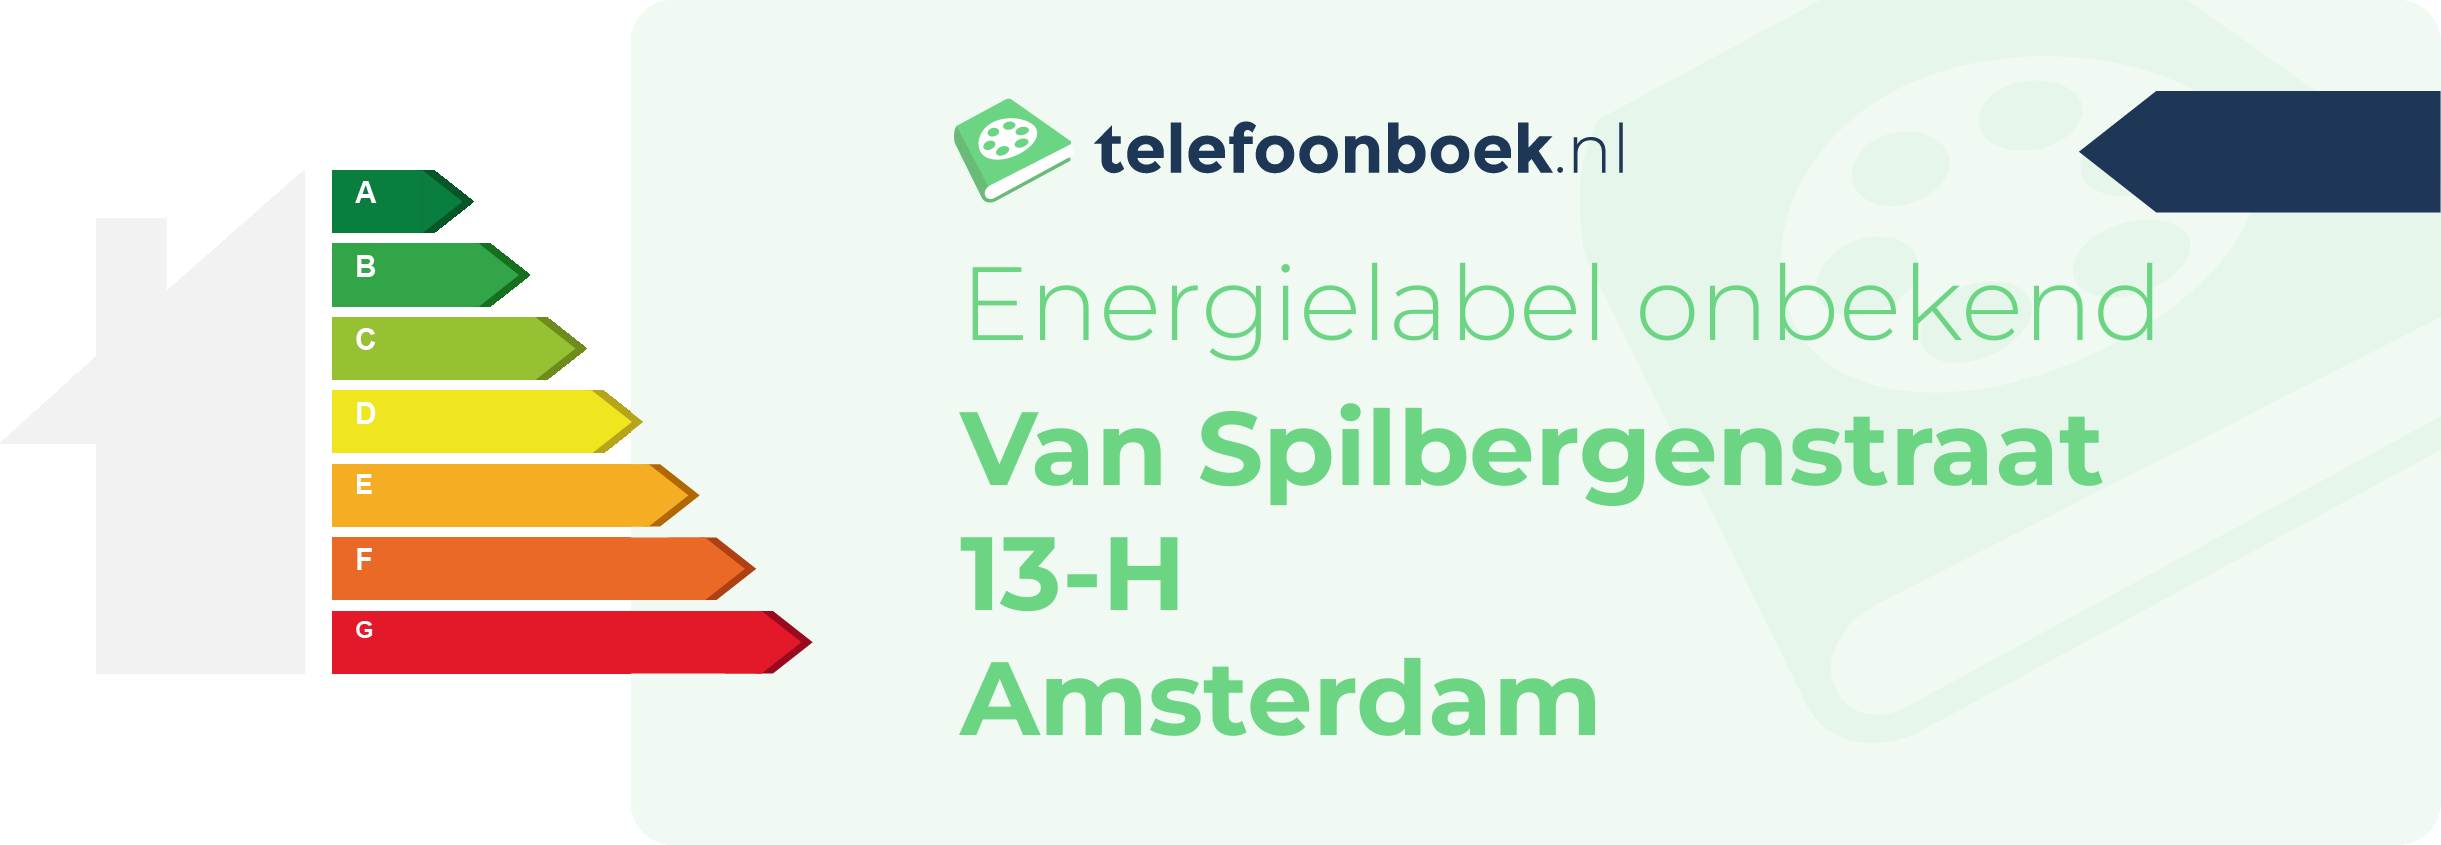 Energielabel Van Spilbergenstraat 13-H Amsterdam